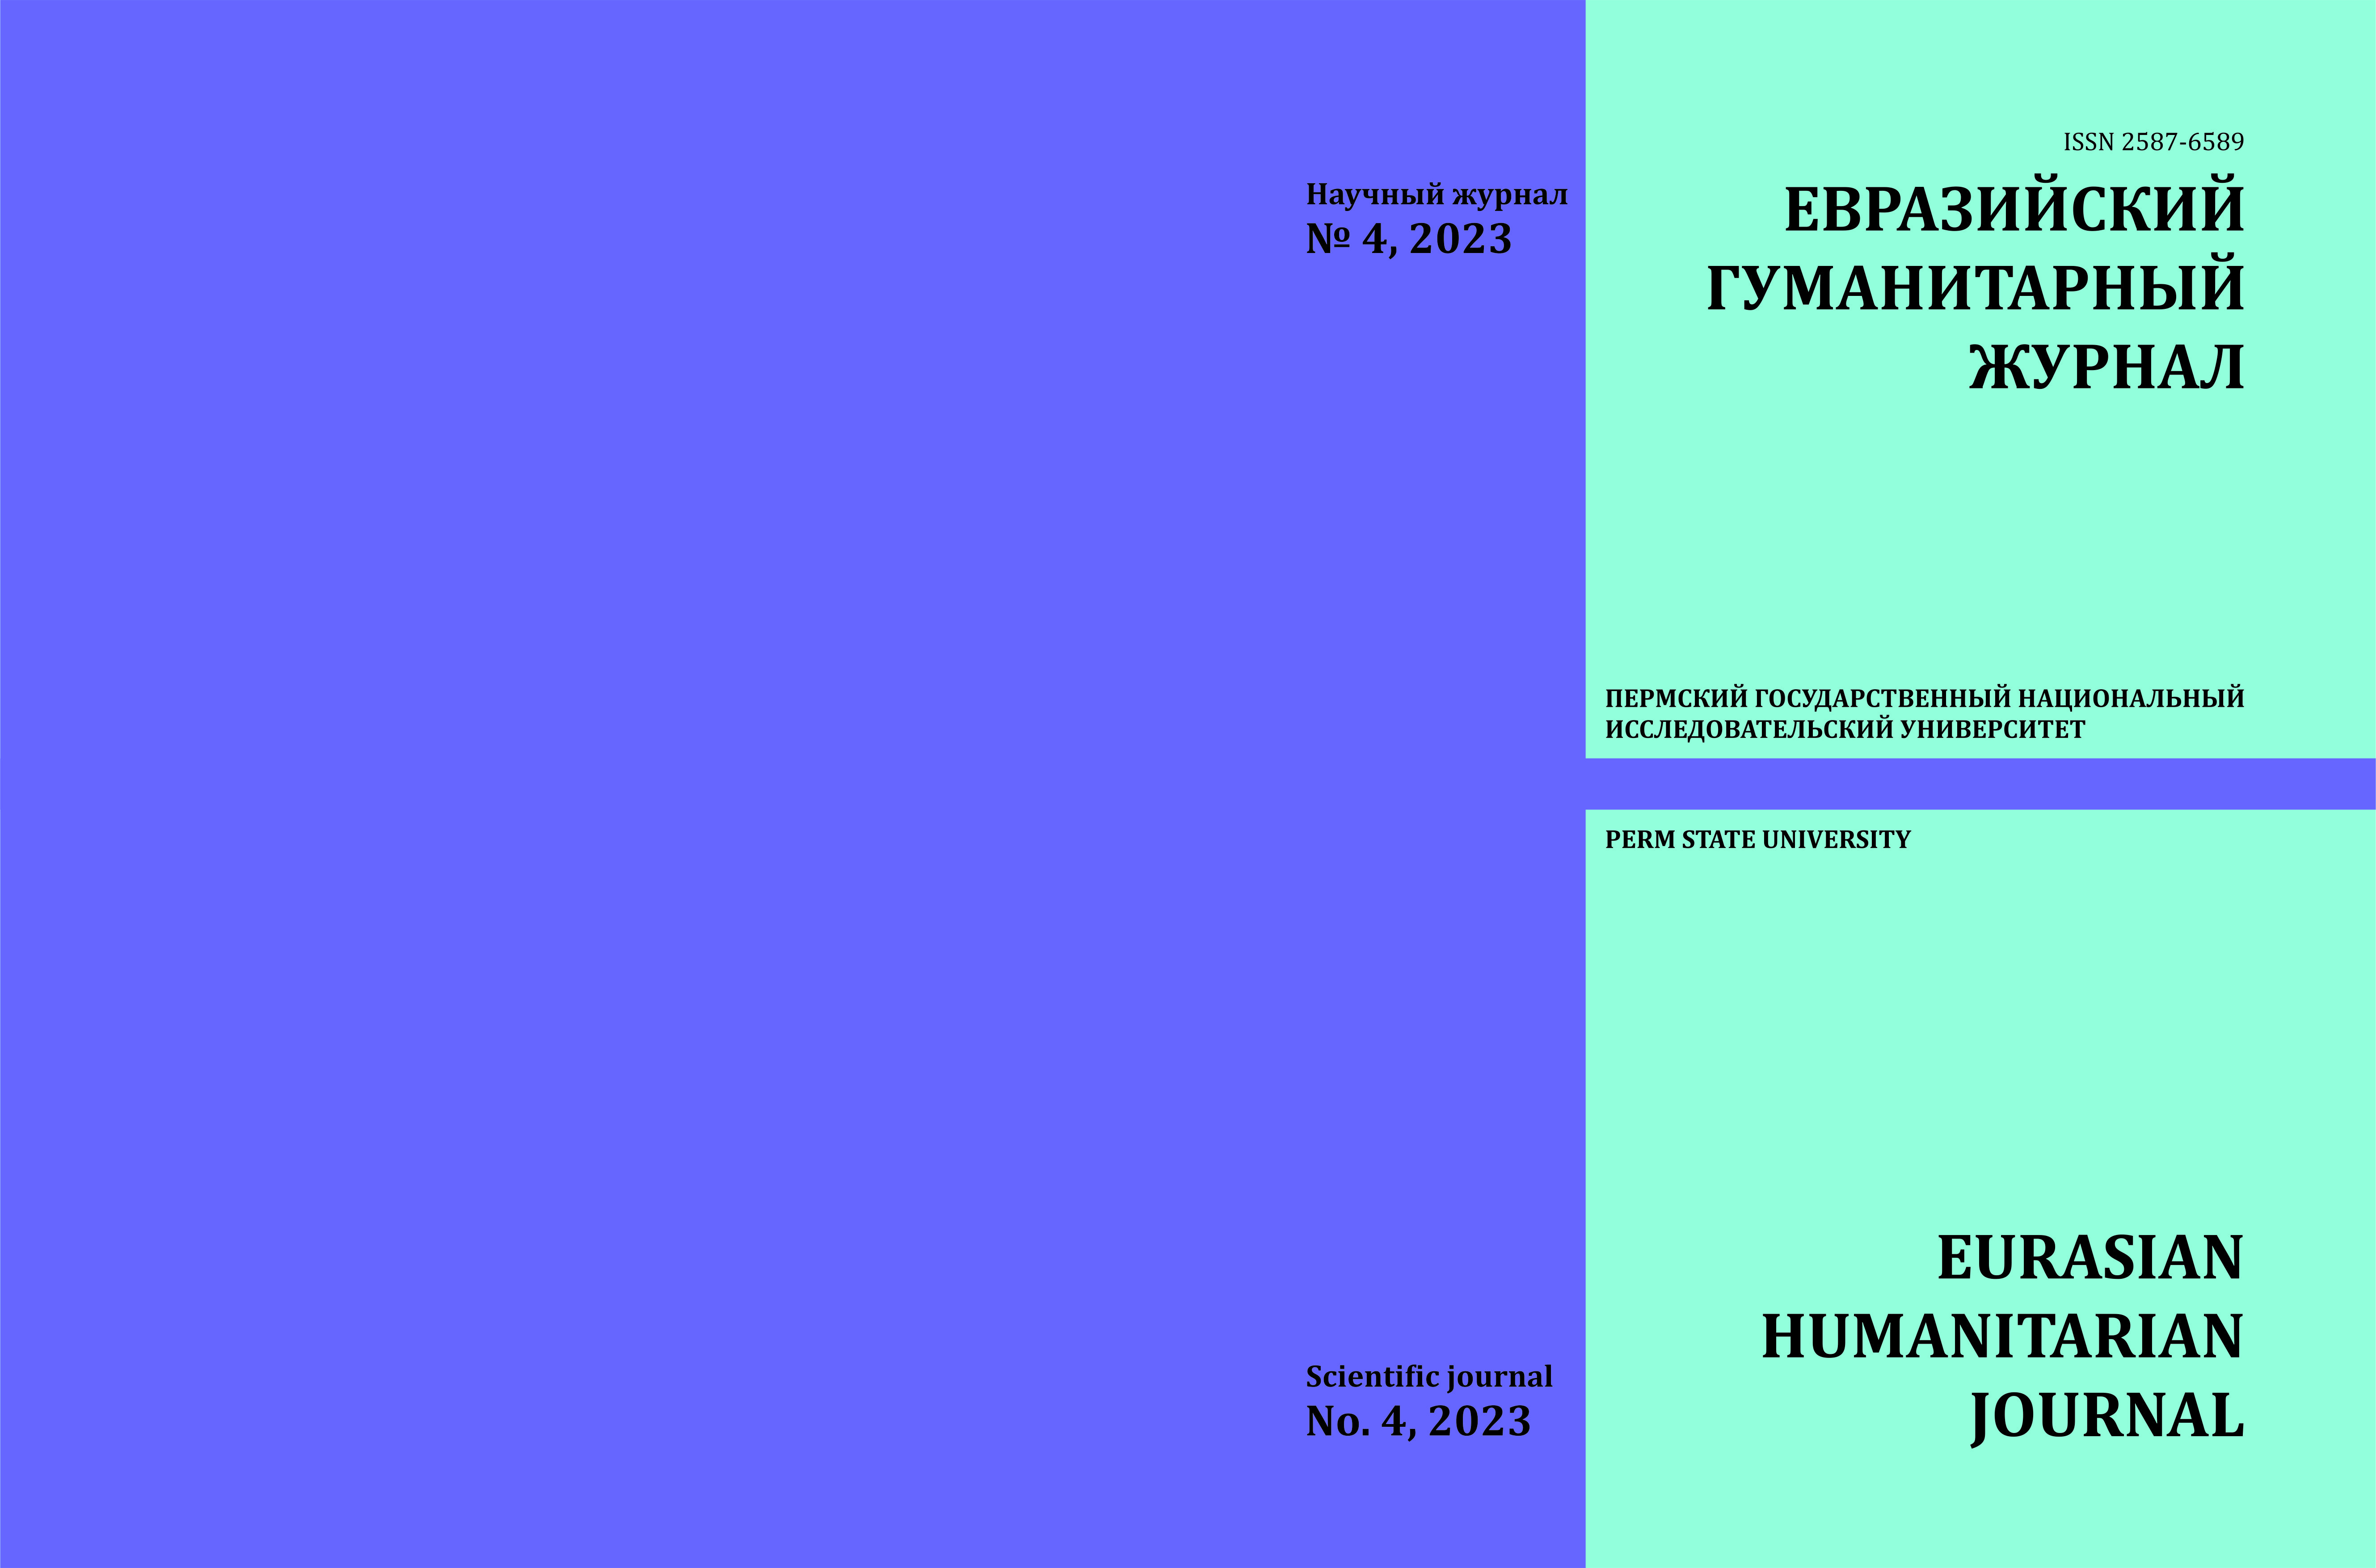 					View No. 4 (2023): Евразийский гуманитарный журнал
				